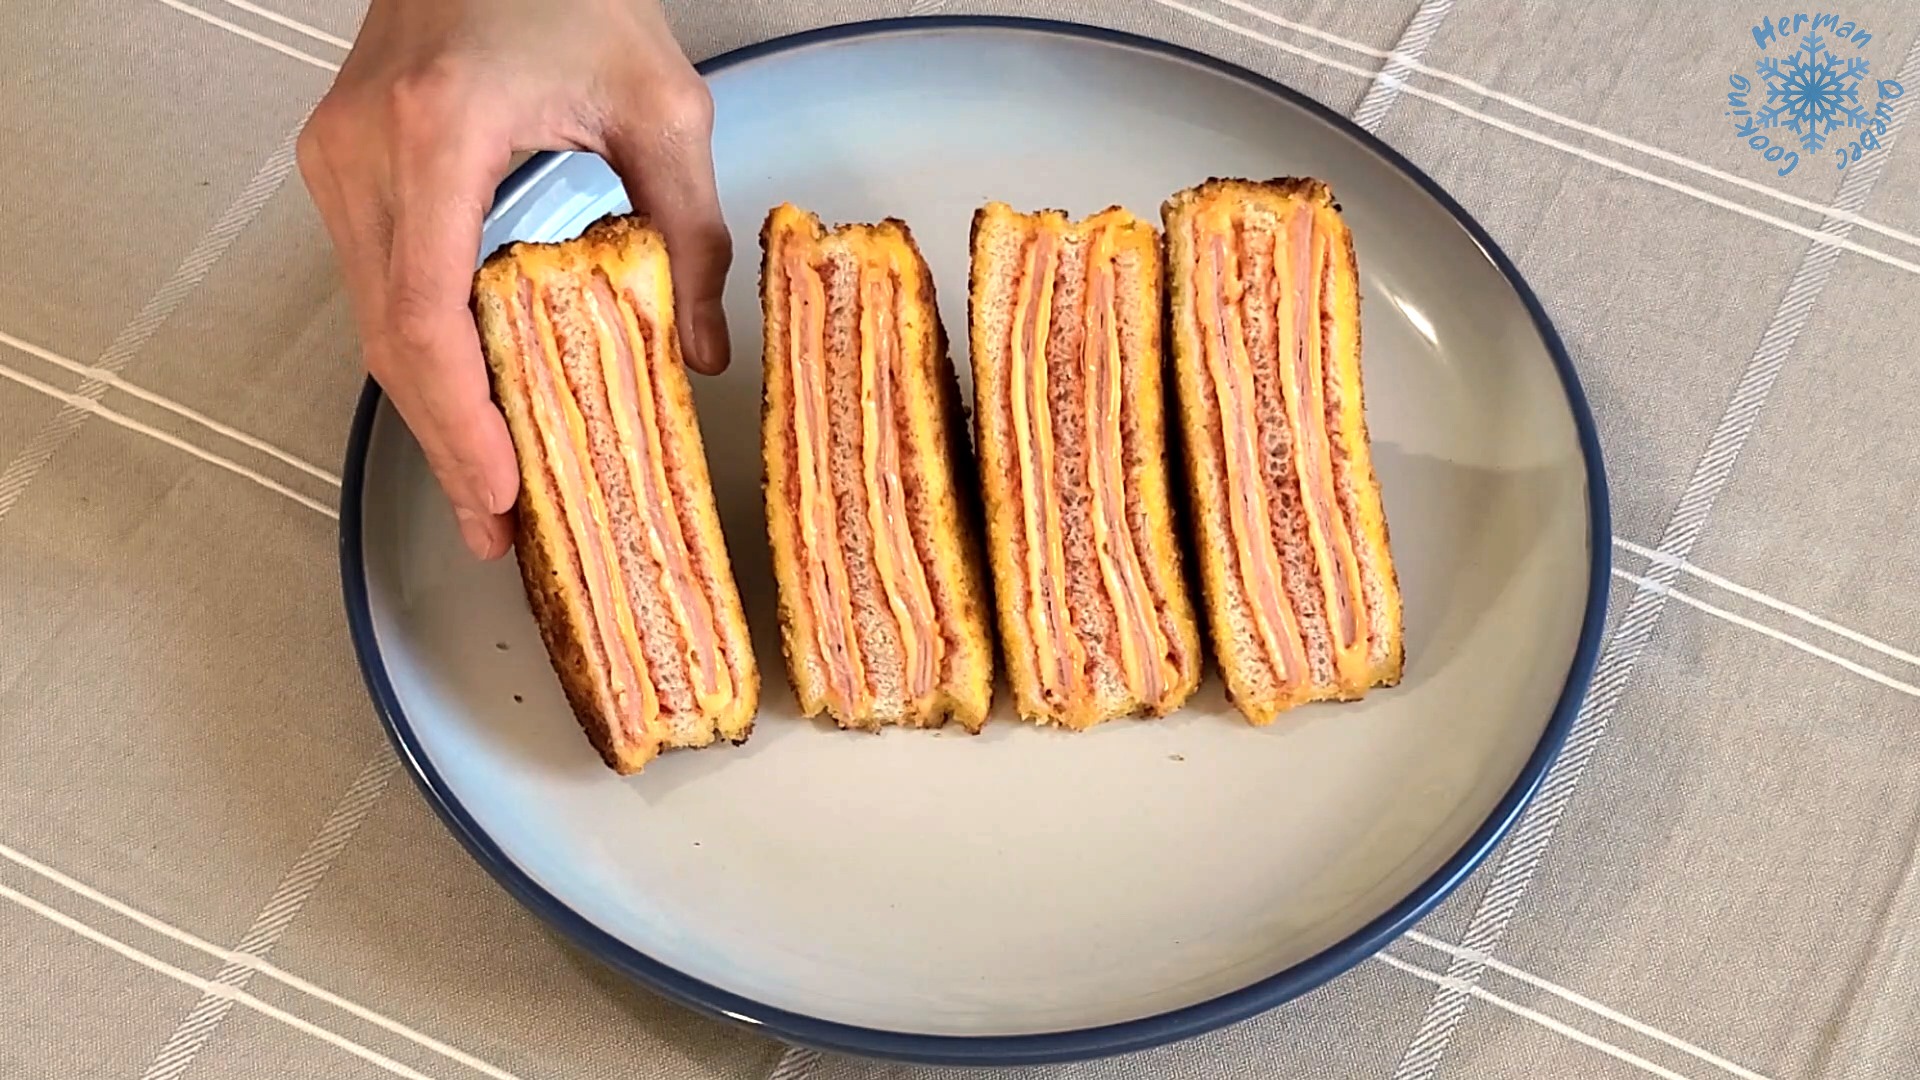 Sandwich thịt nguội đơn giản cho bữa sáng vội vàng! - Ảnh 1